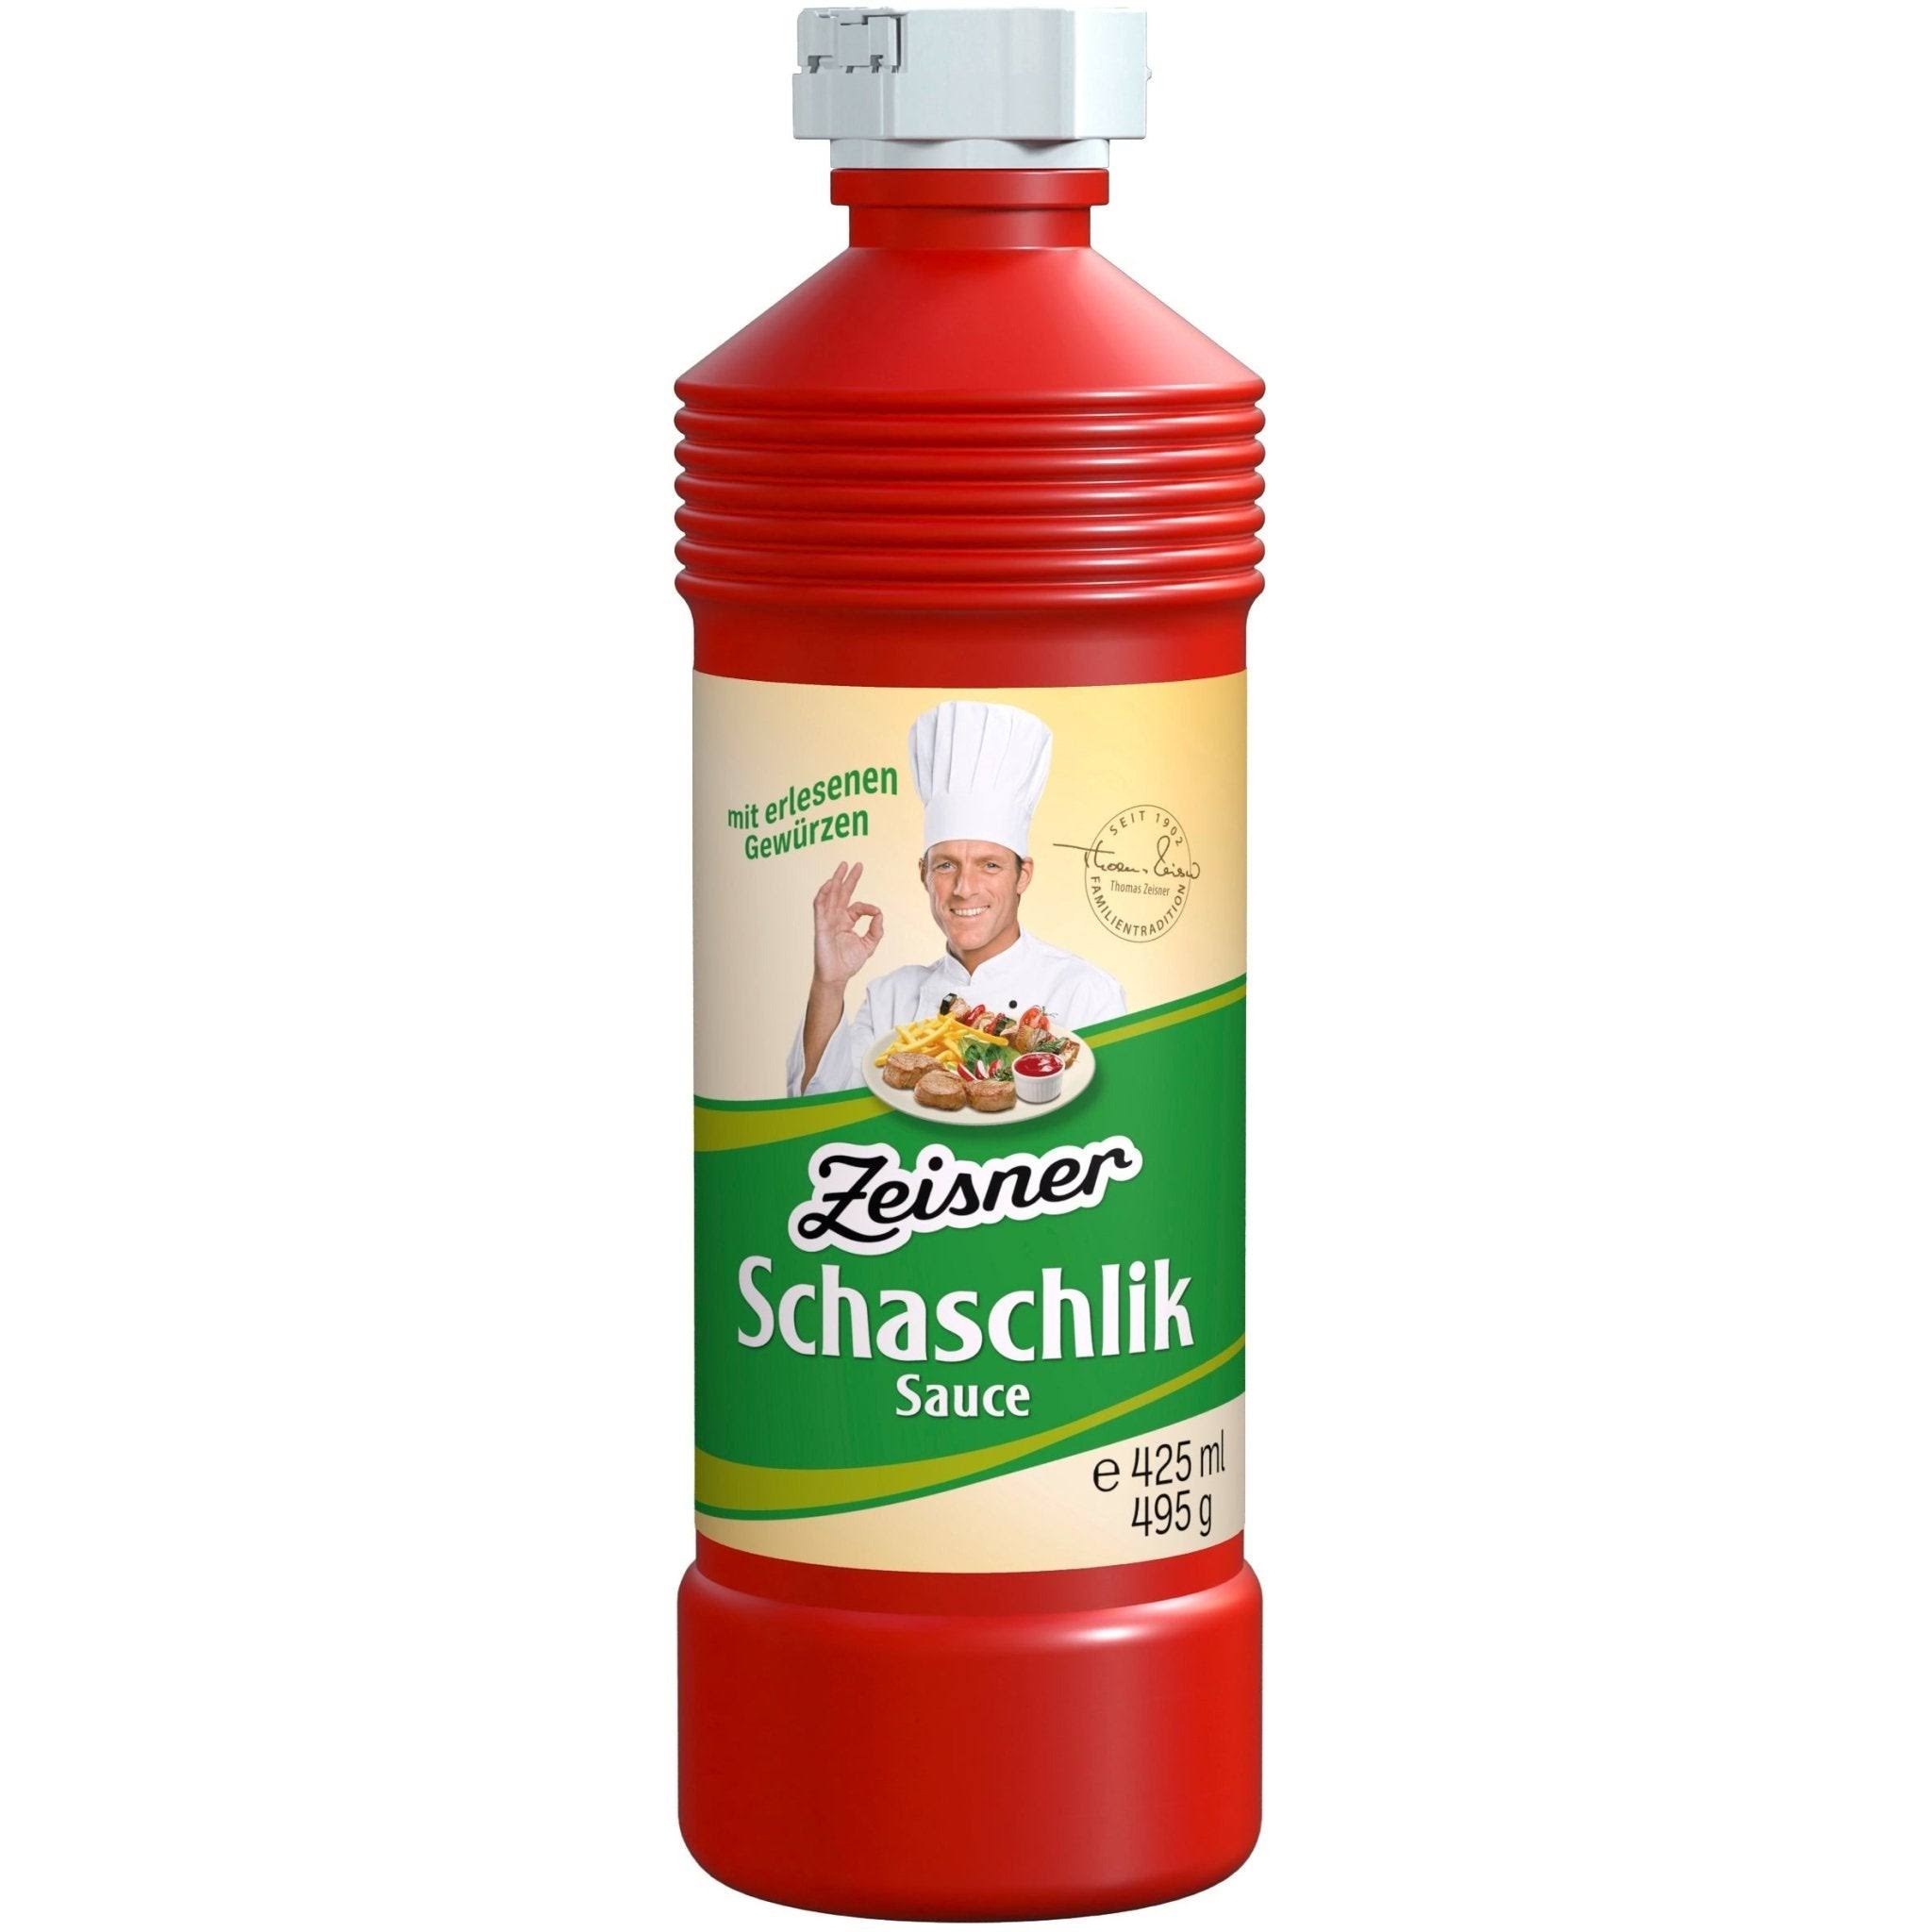 Zeisner Schaschlik Sauce 495g